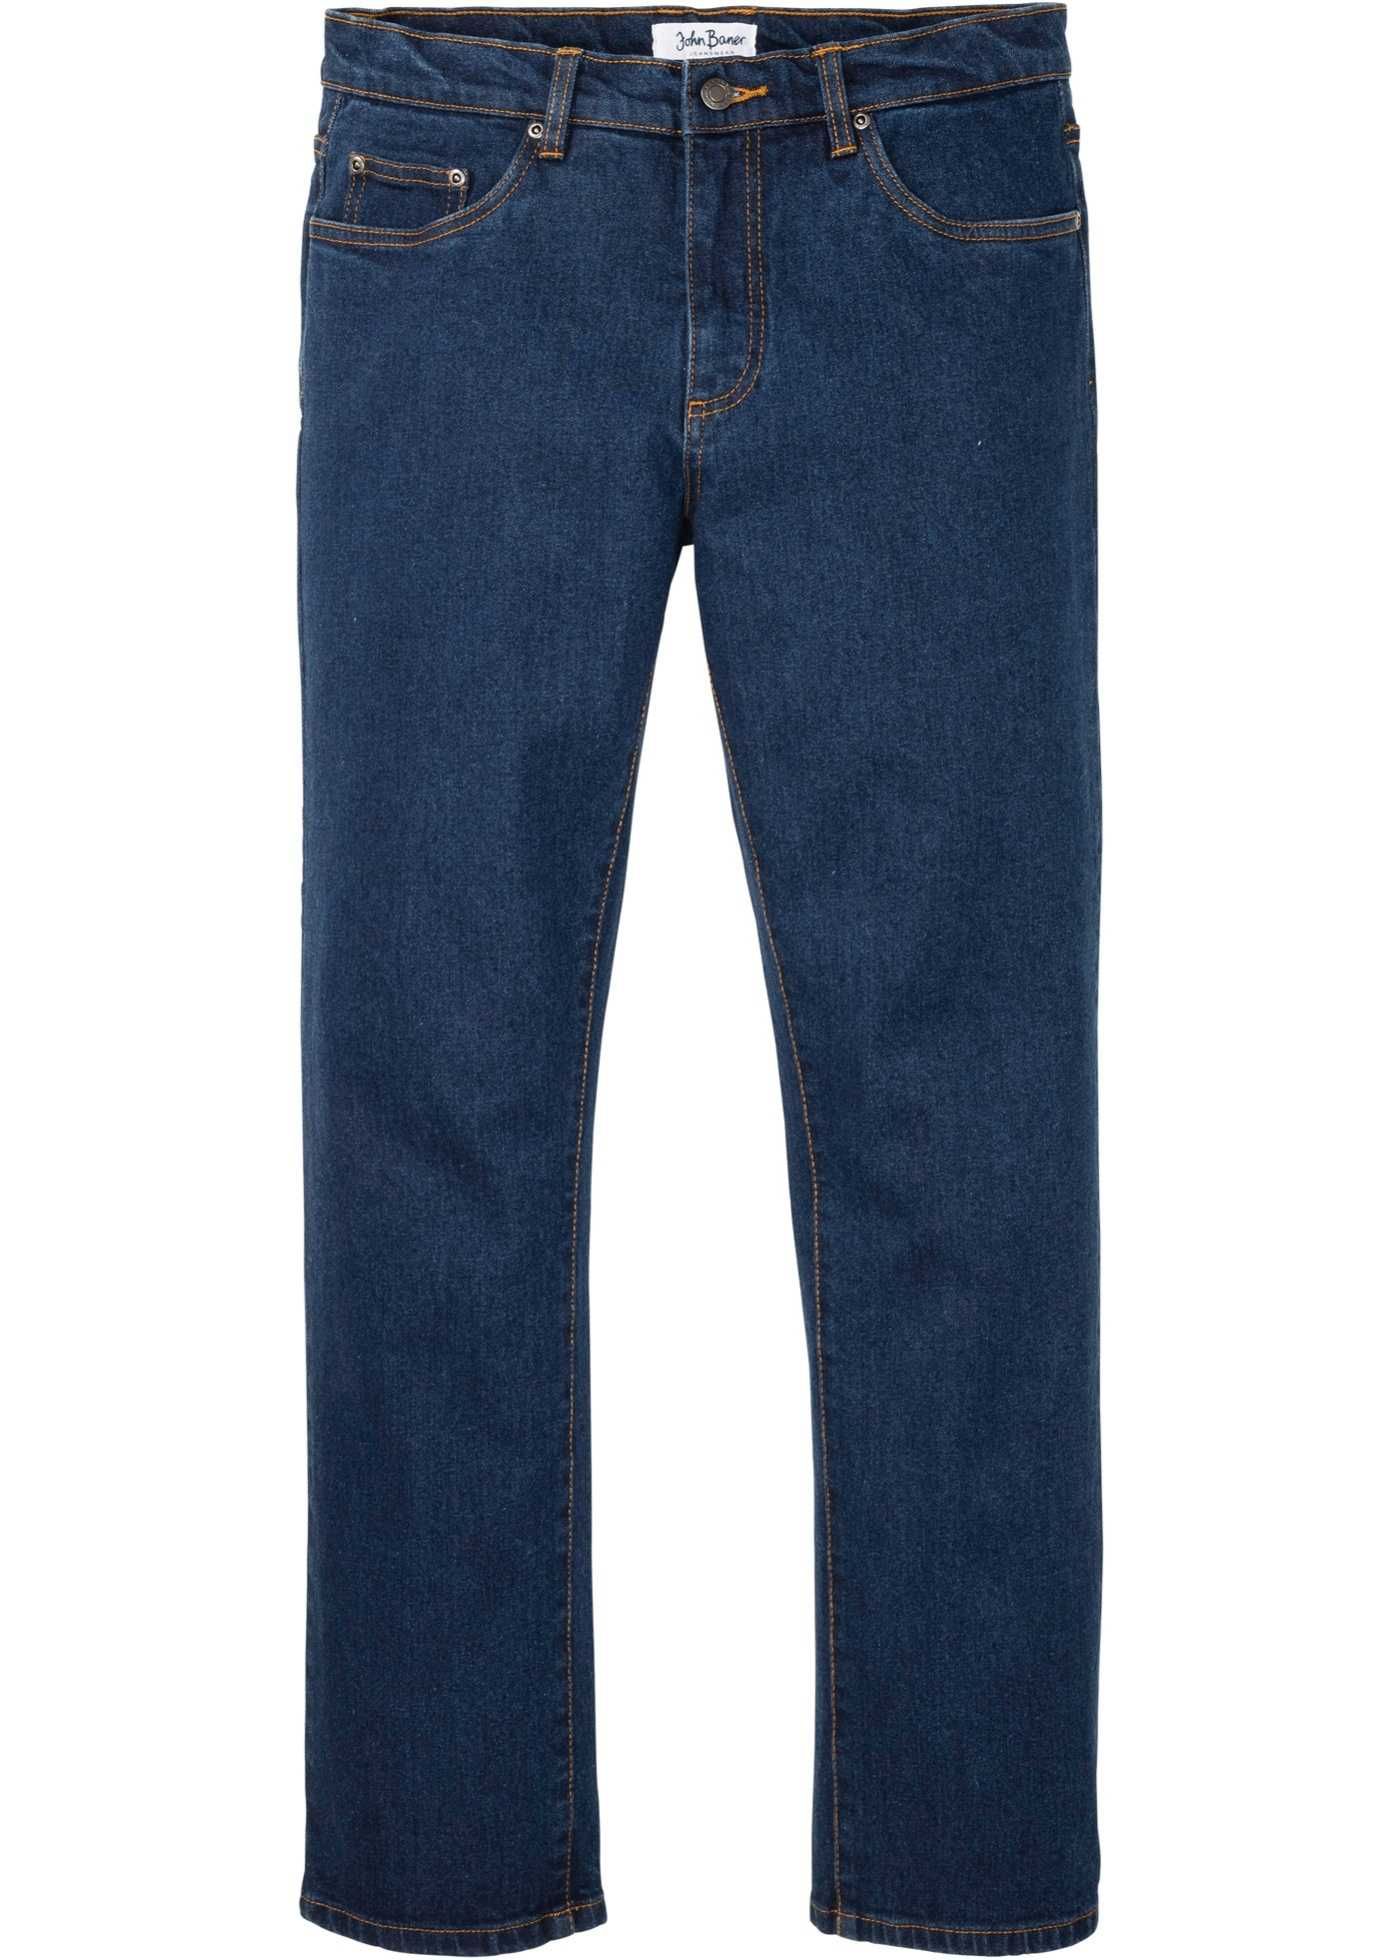 Jeans męskie klasyczne 100% Bawełna Rozmiar 60